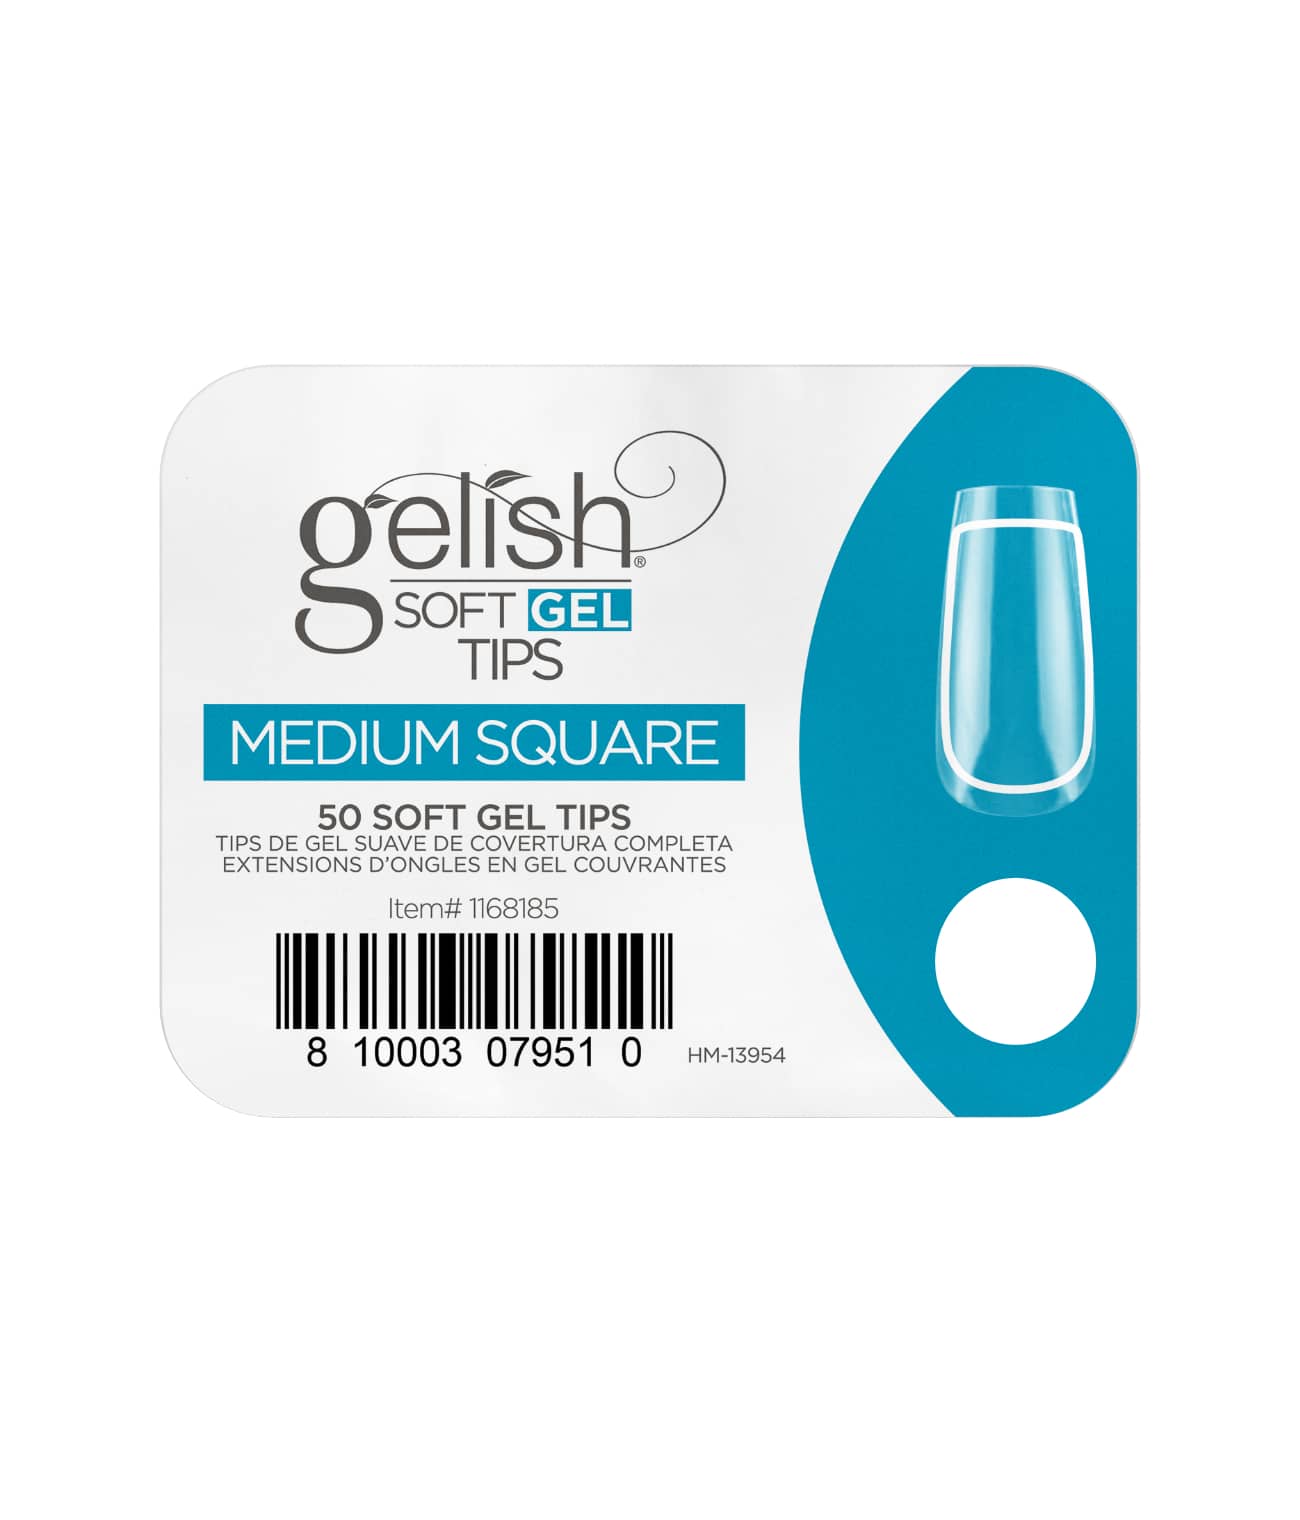 Gelish SoftGel Medium Square Tips 50 Pack Refill - Sagema